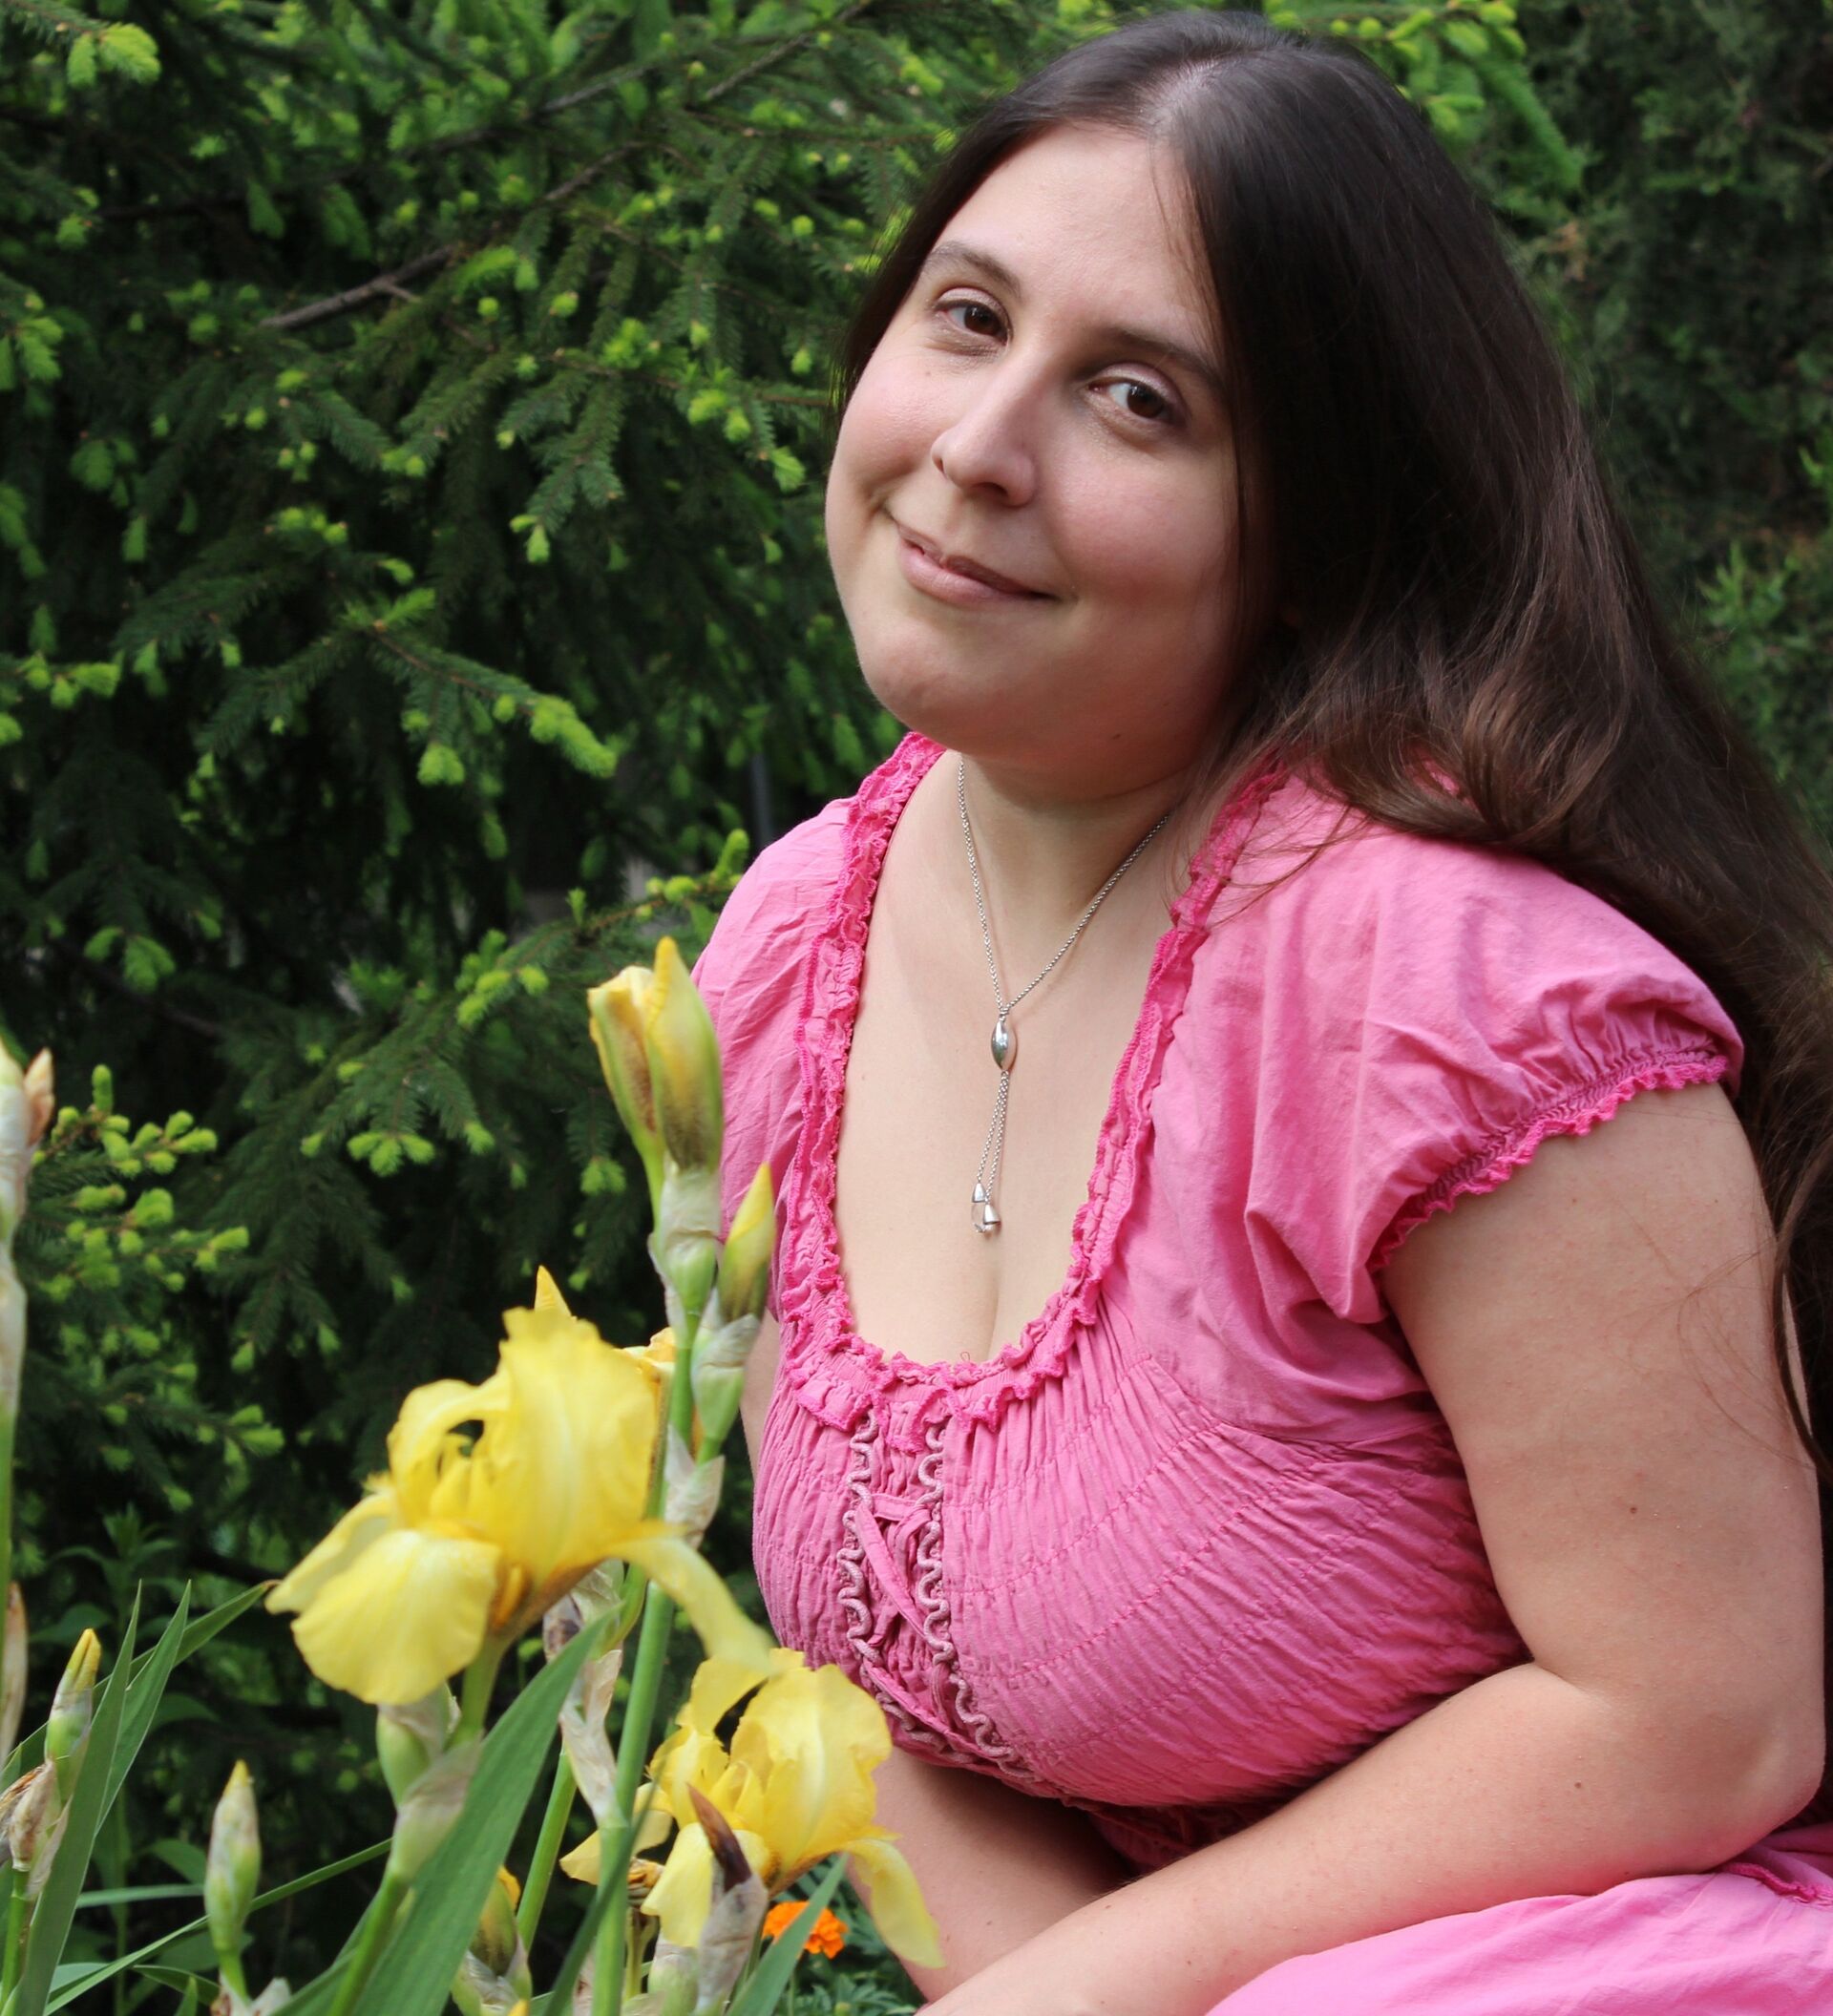 летней девочке из Казани удалили гигантскую грудь весом 12 килограммов | STARHIT